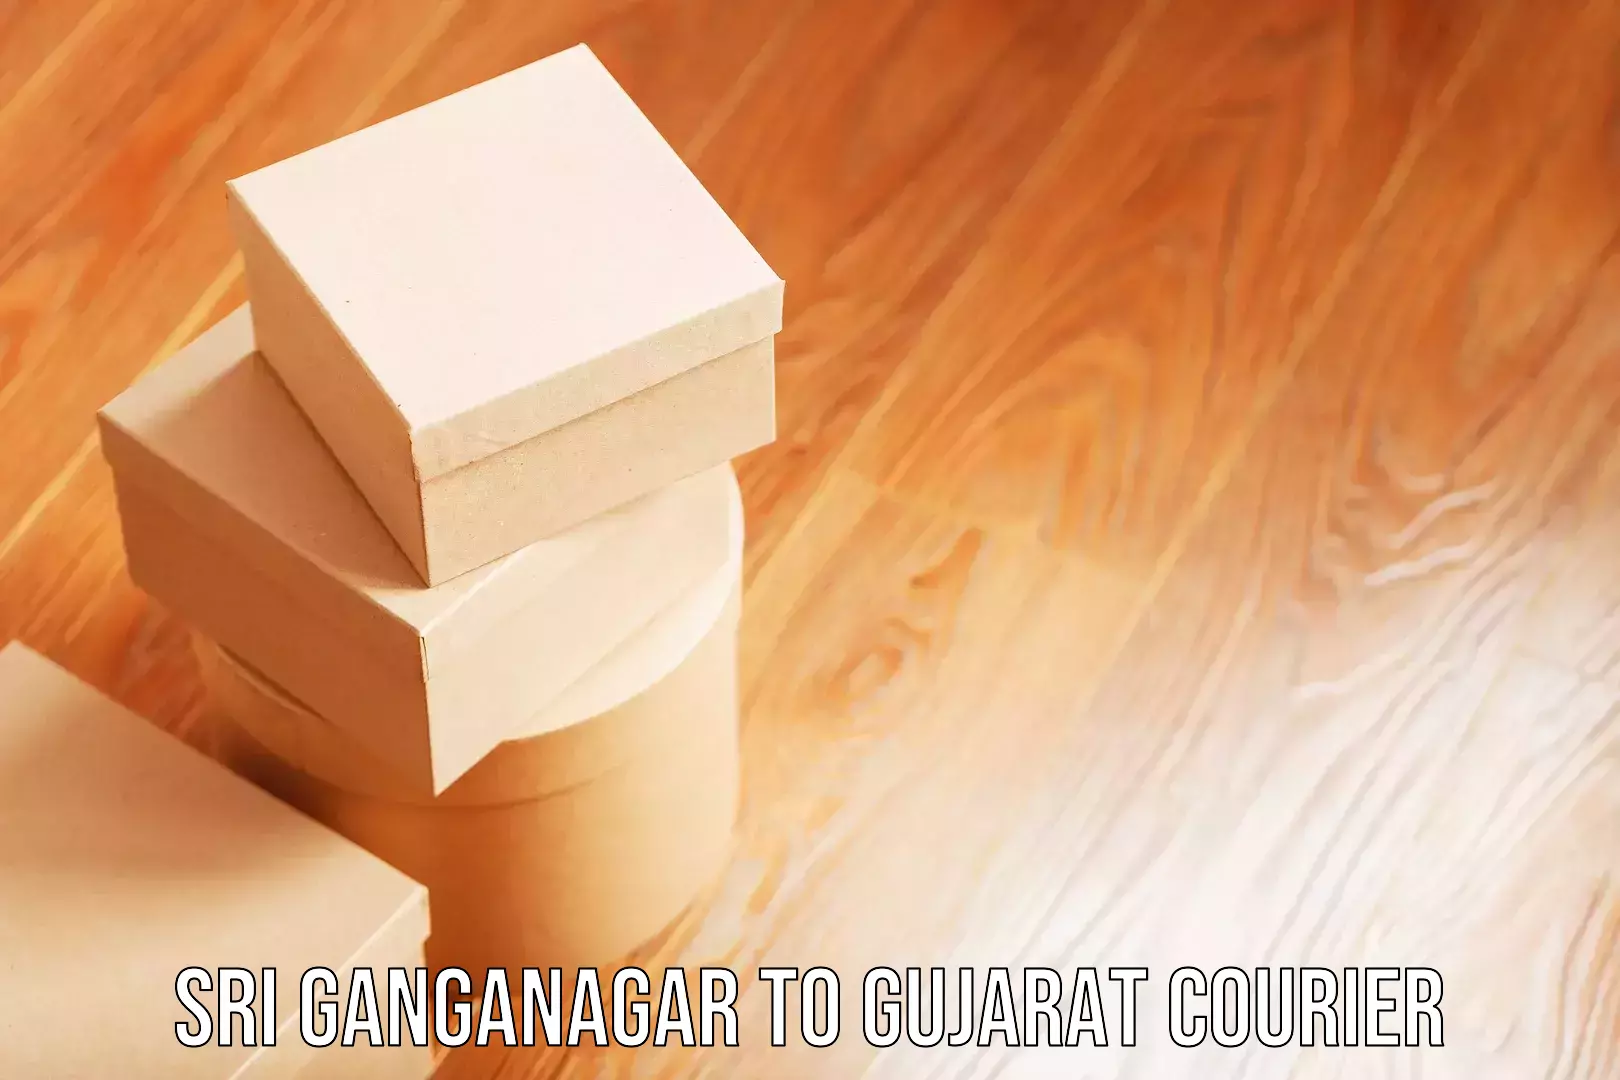 Luggage delivery network Sri Ganganagar to Himatnagar